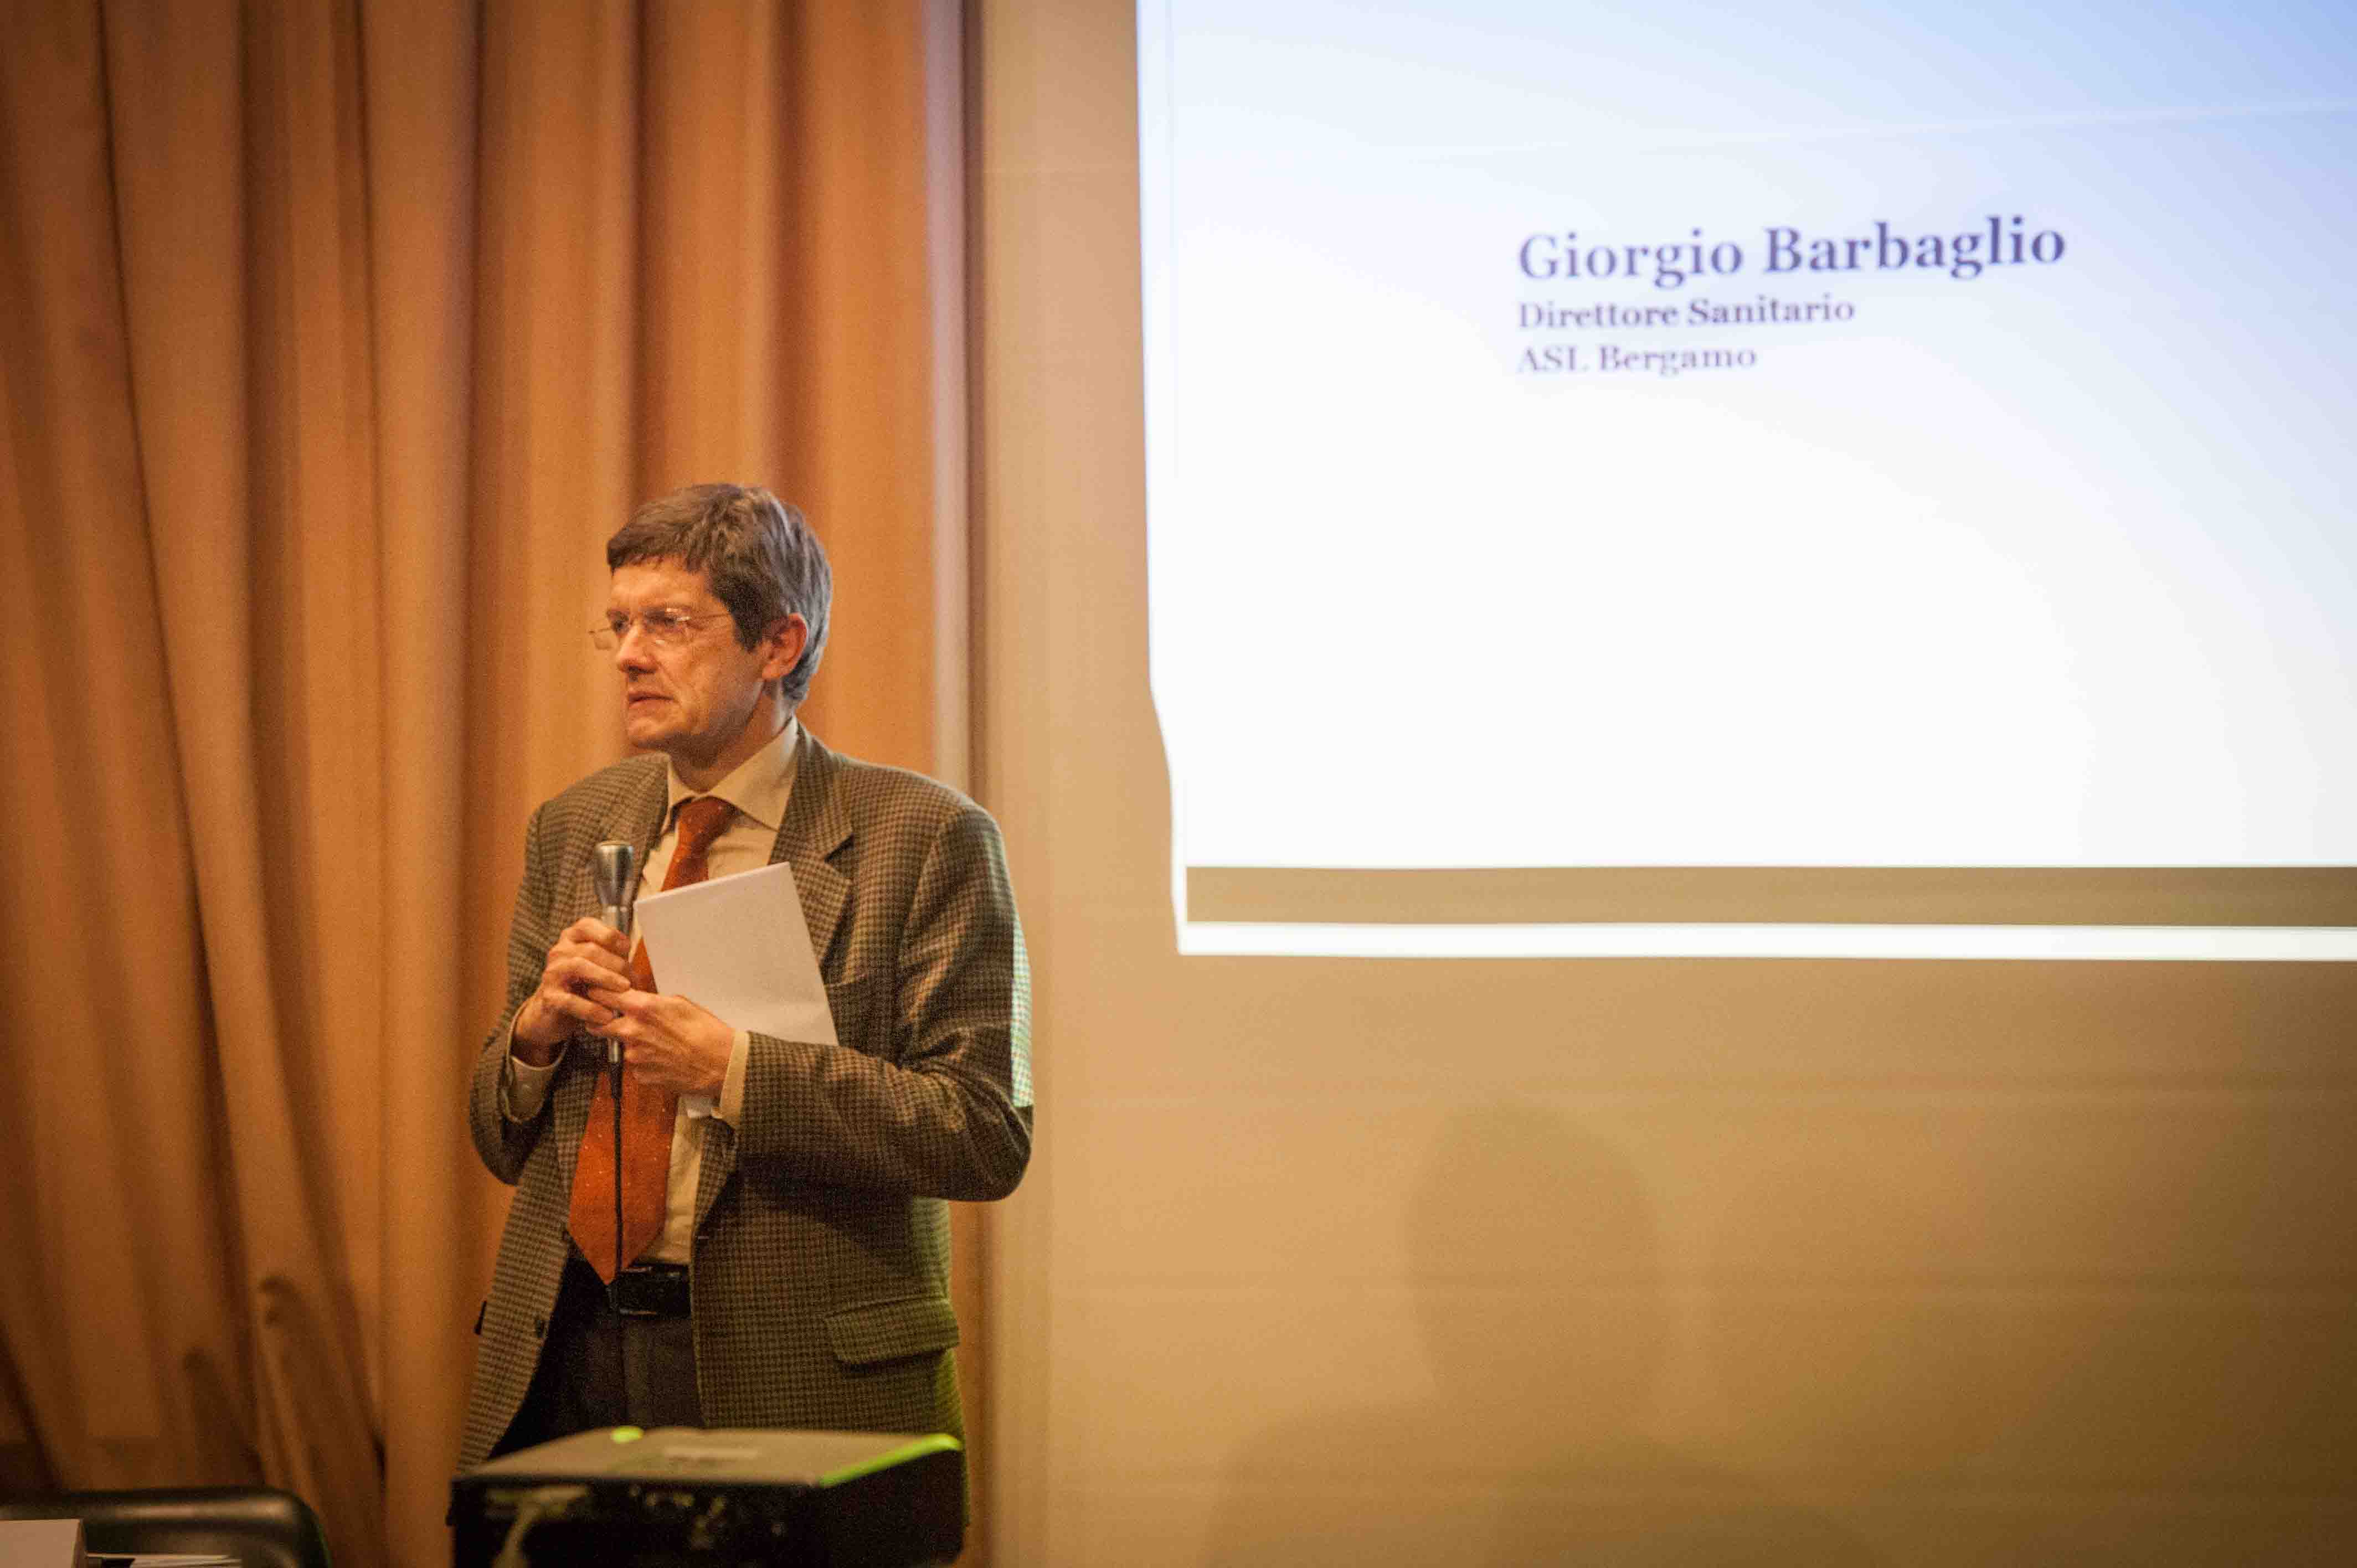 29.1.2014 - Interviene Giorgio Barbaglio, Direttore Sanitario ASL Bergamo